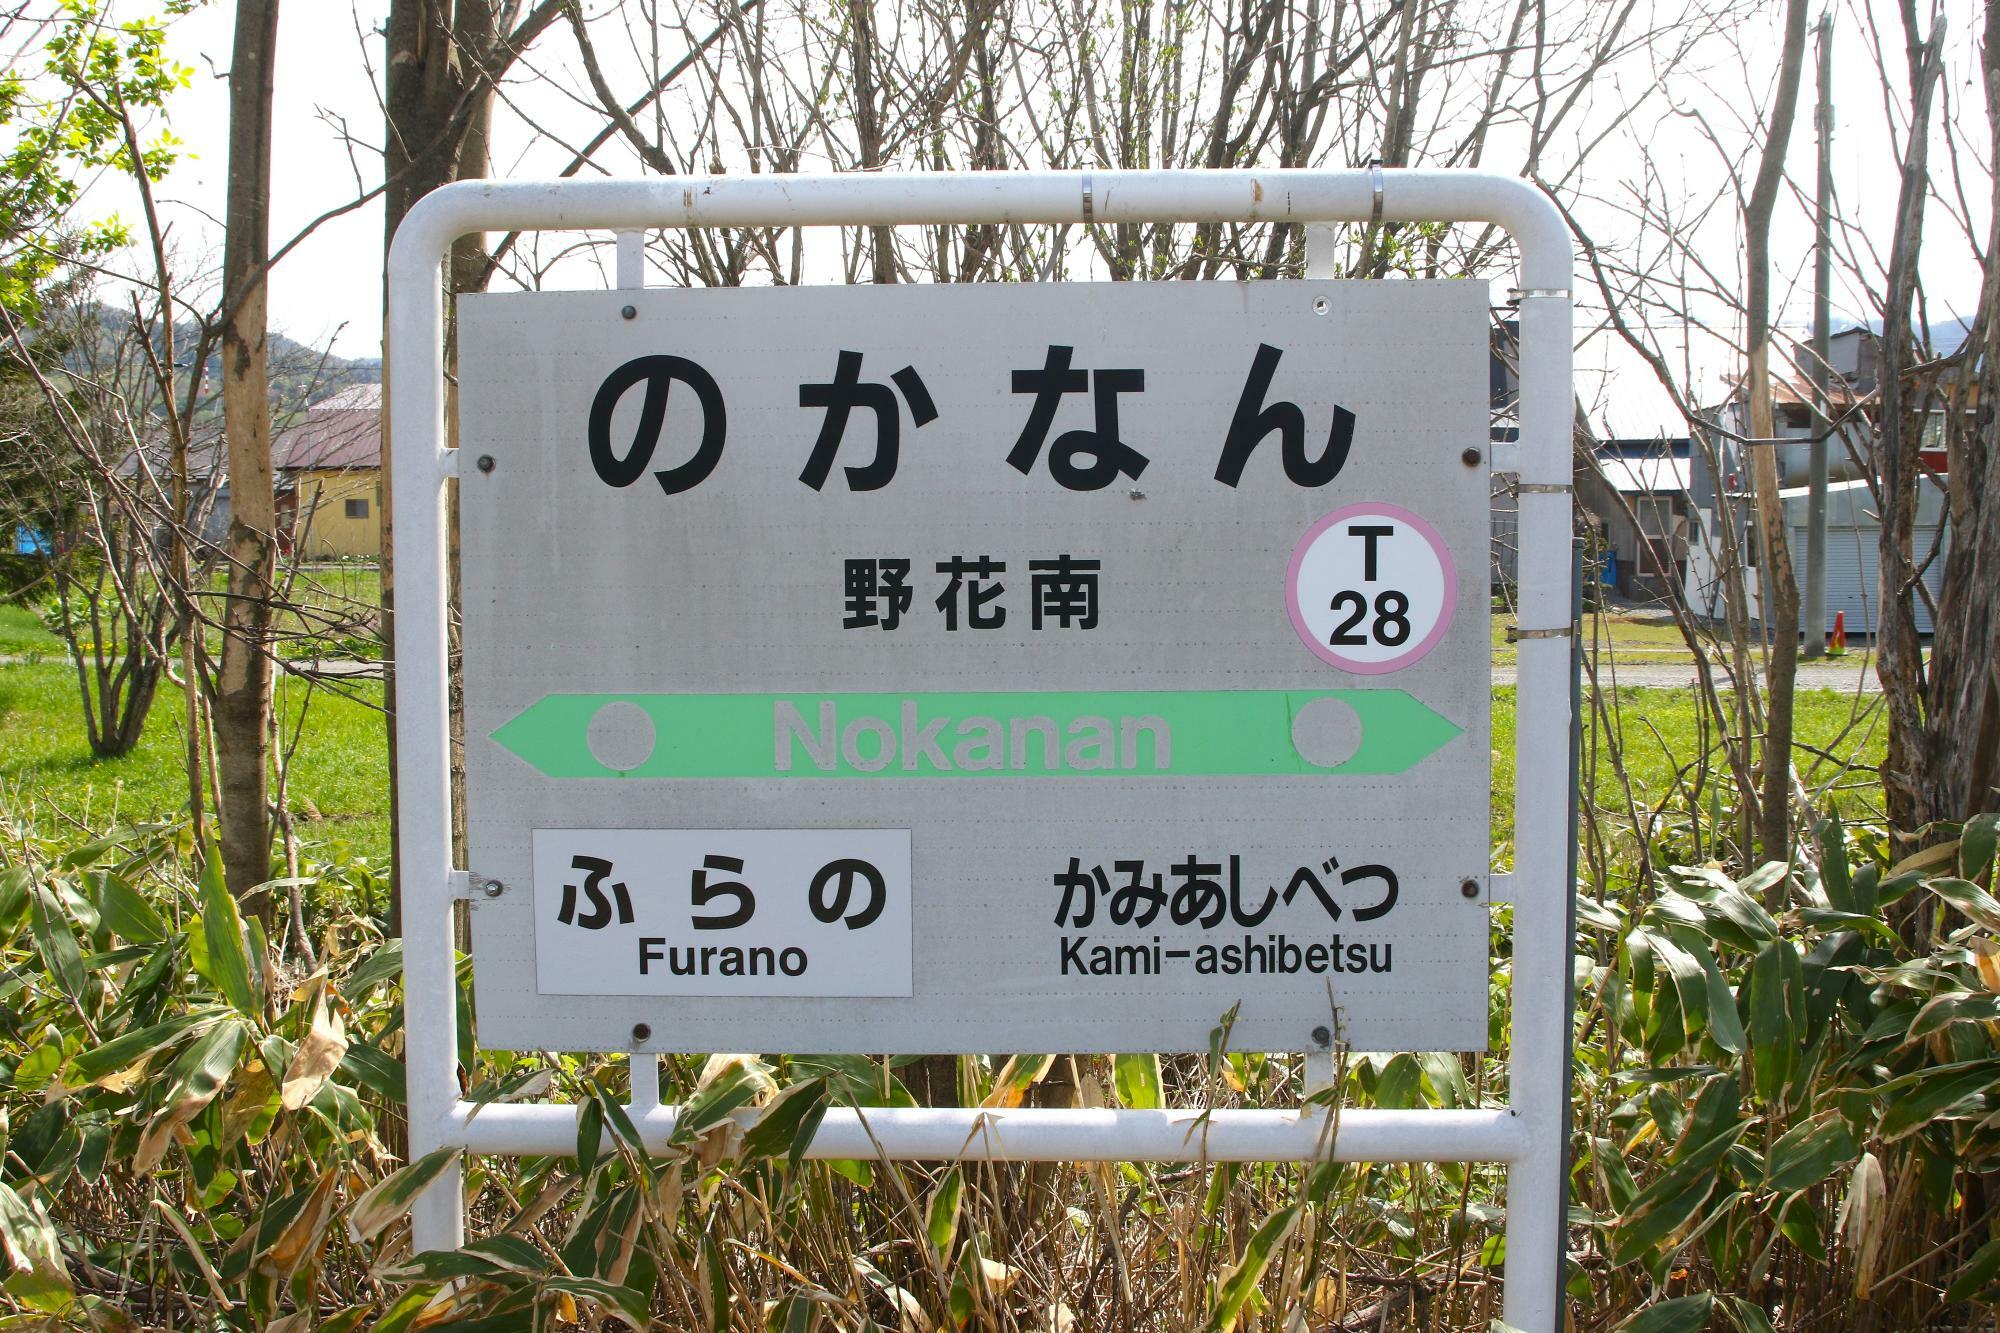 野花南駅駅名標。富良野の所が滝里、島ノ下と変わっていった